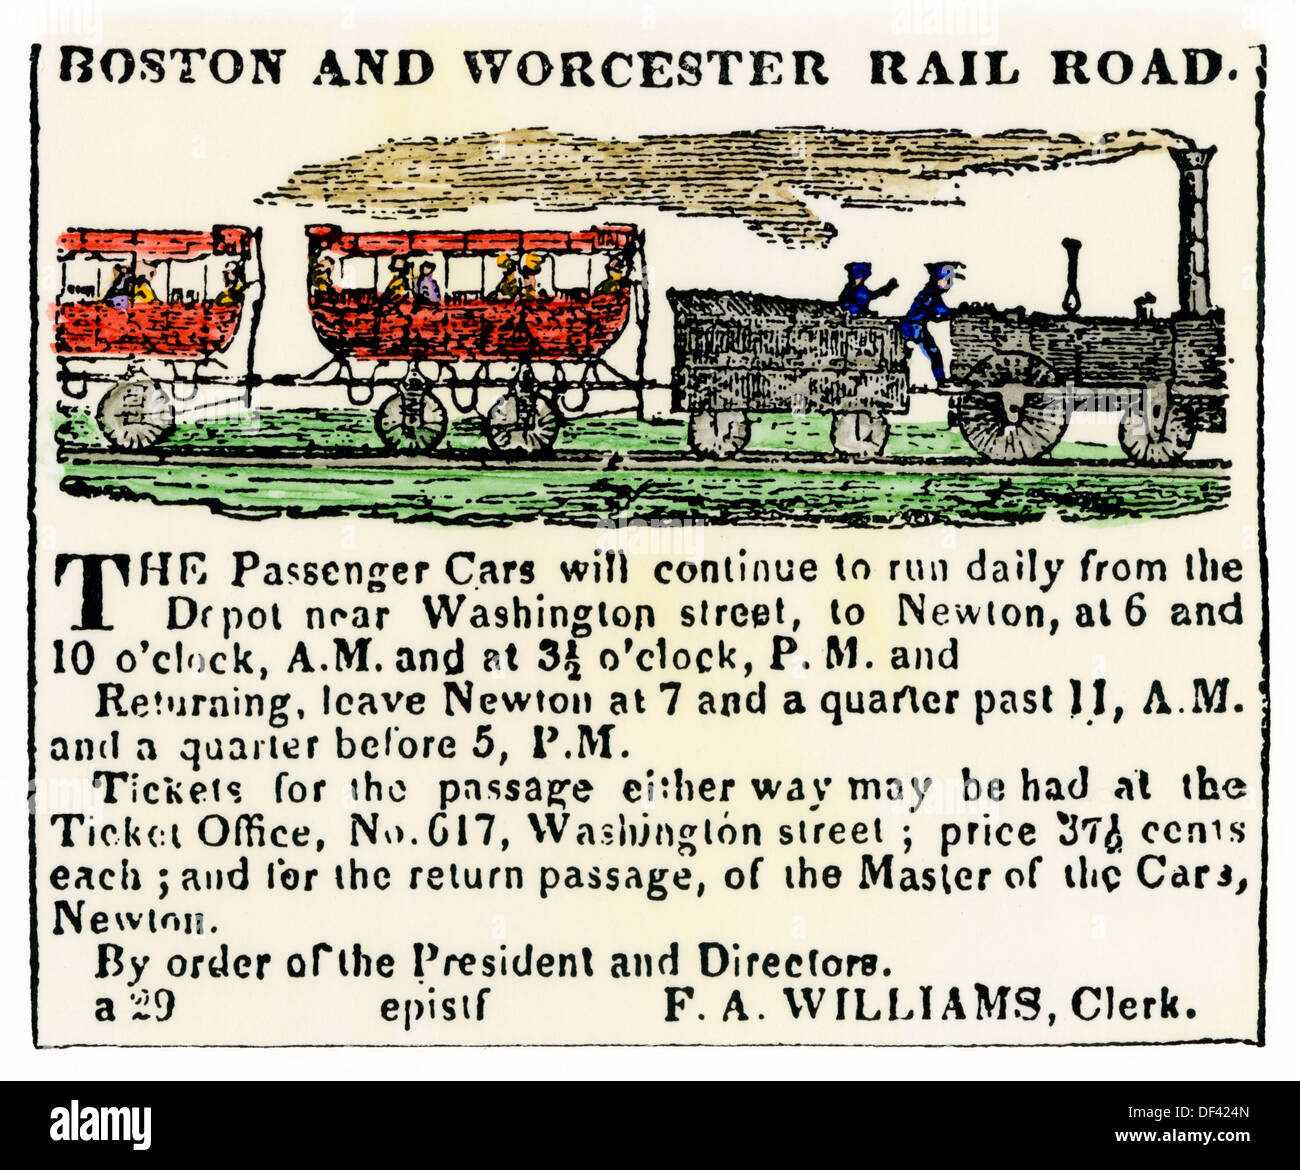 Pub pour le Boston et Worcester Railroad, début des années 1800. À la main, gravure sur bois Banque D'Images